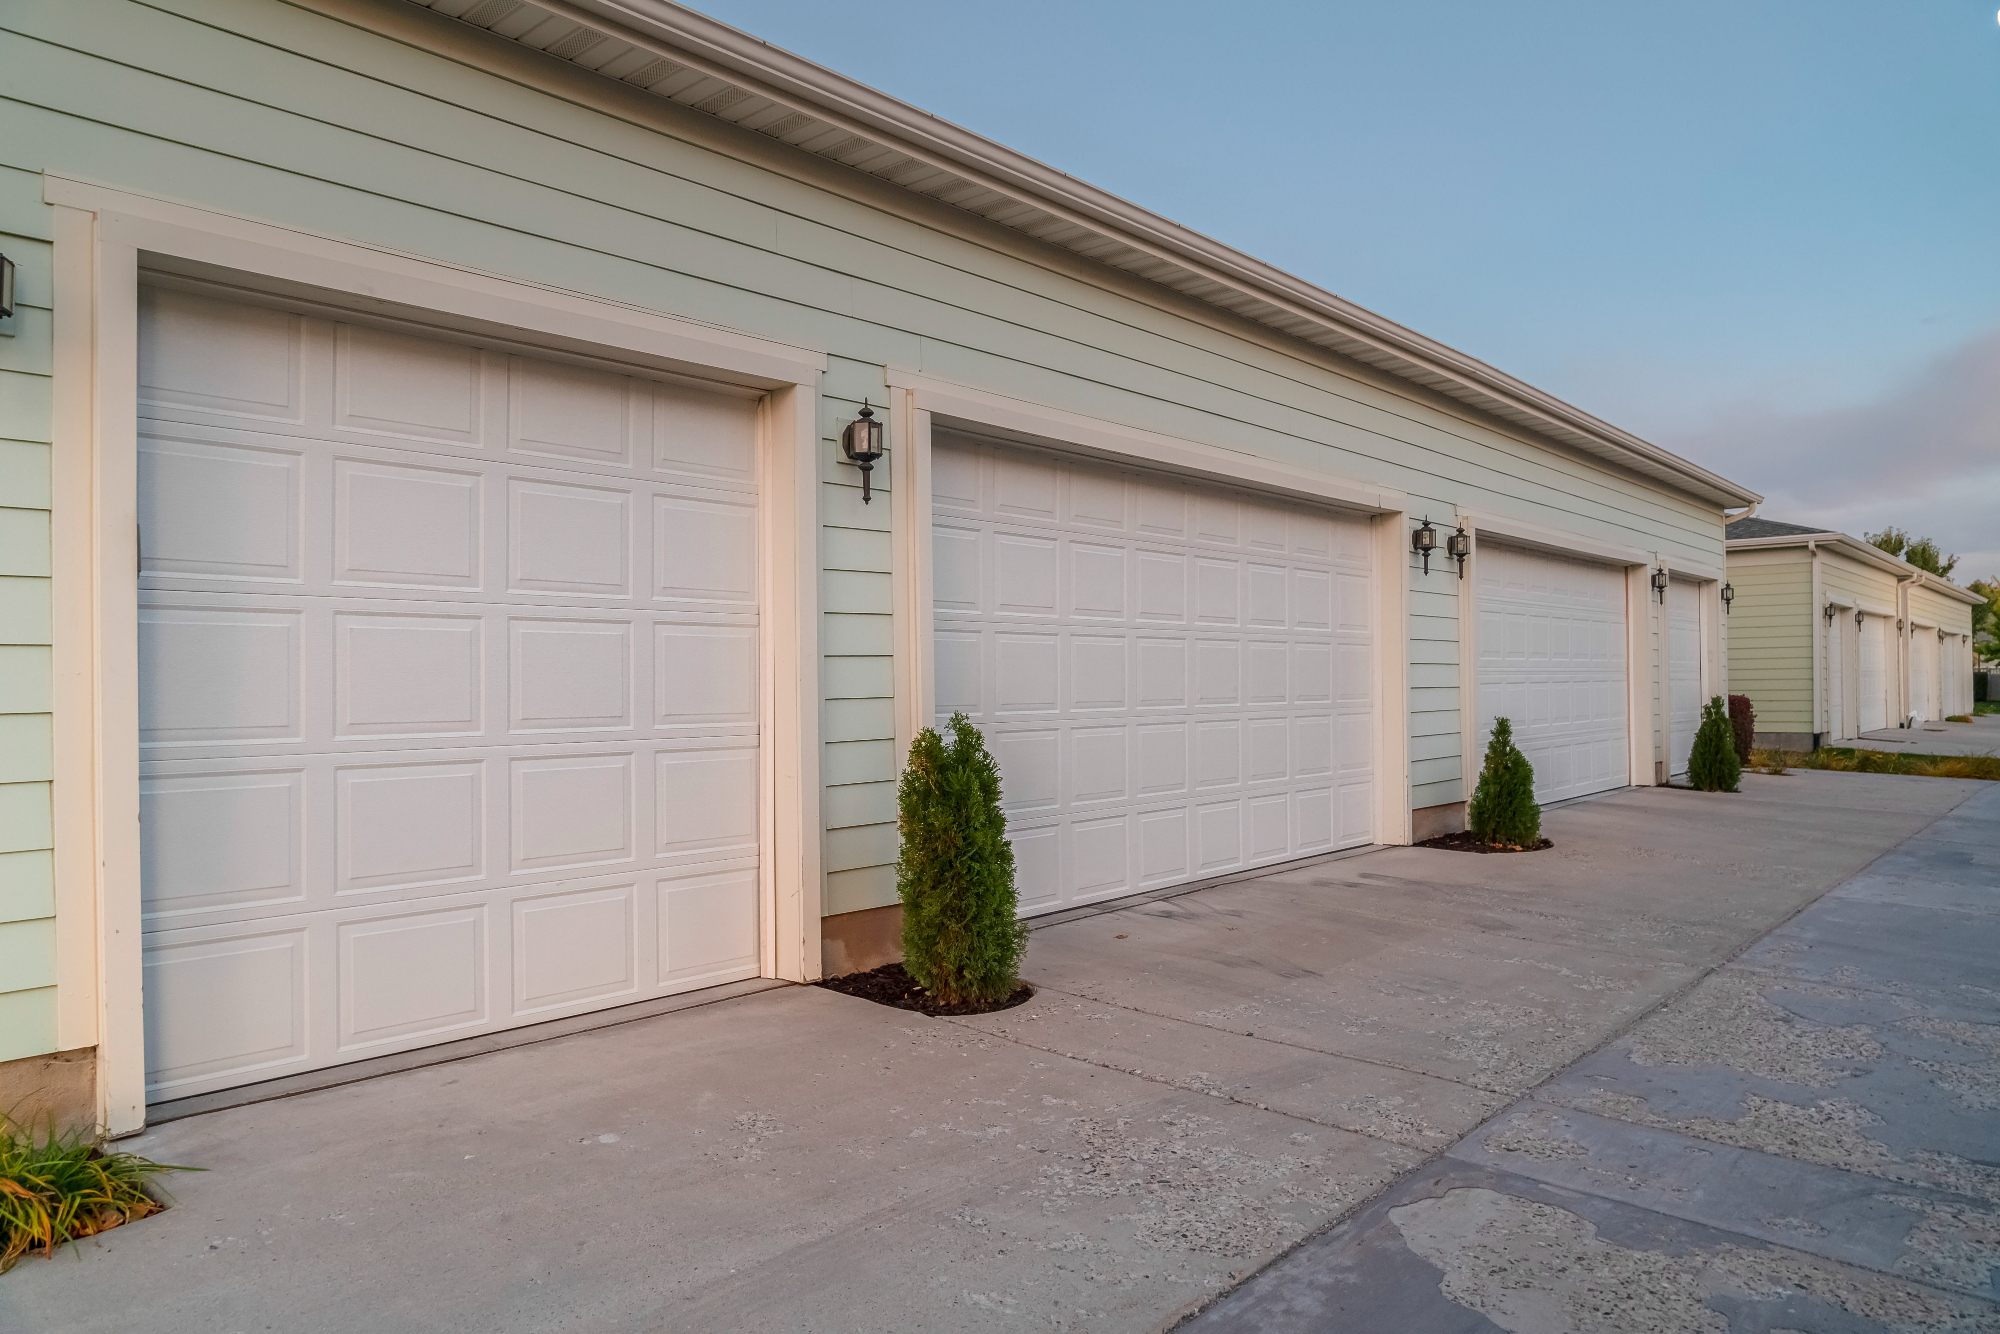 Ob postavitvi garaže si je potrebno izbrati dobra garažna vrata